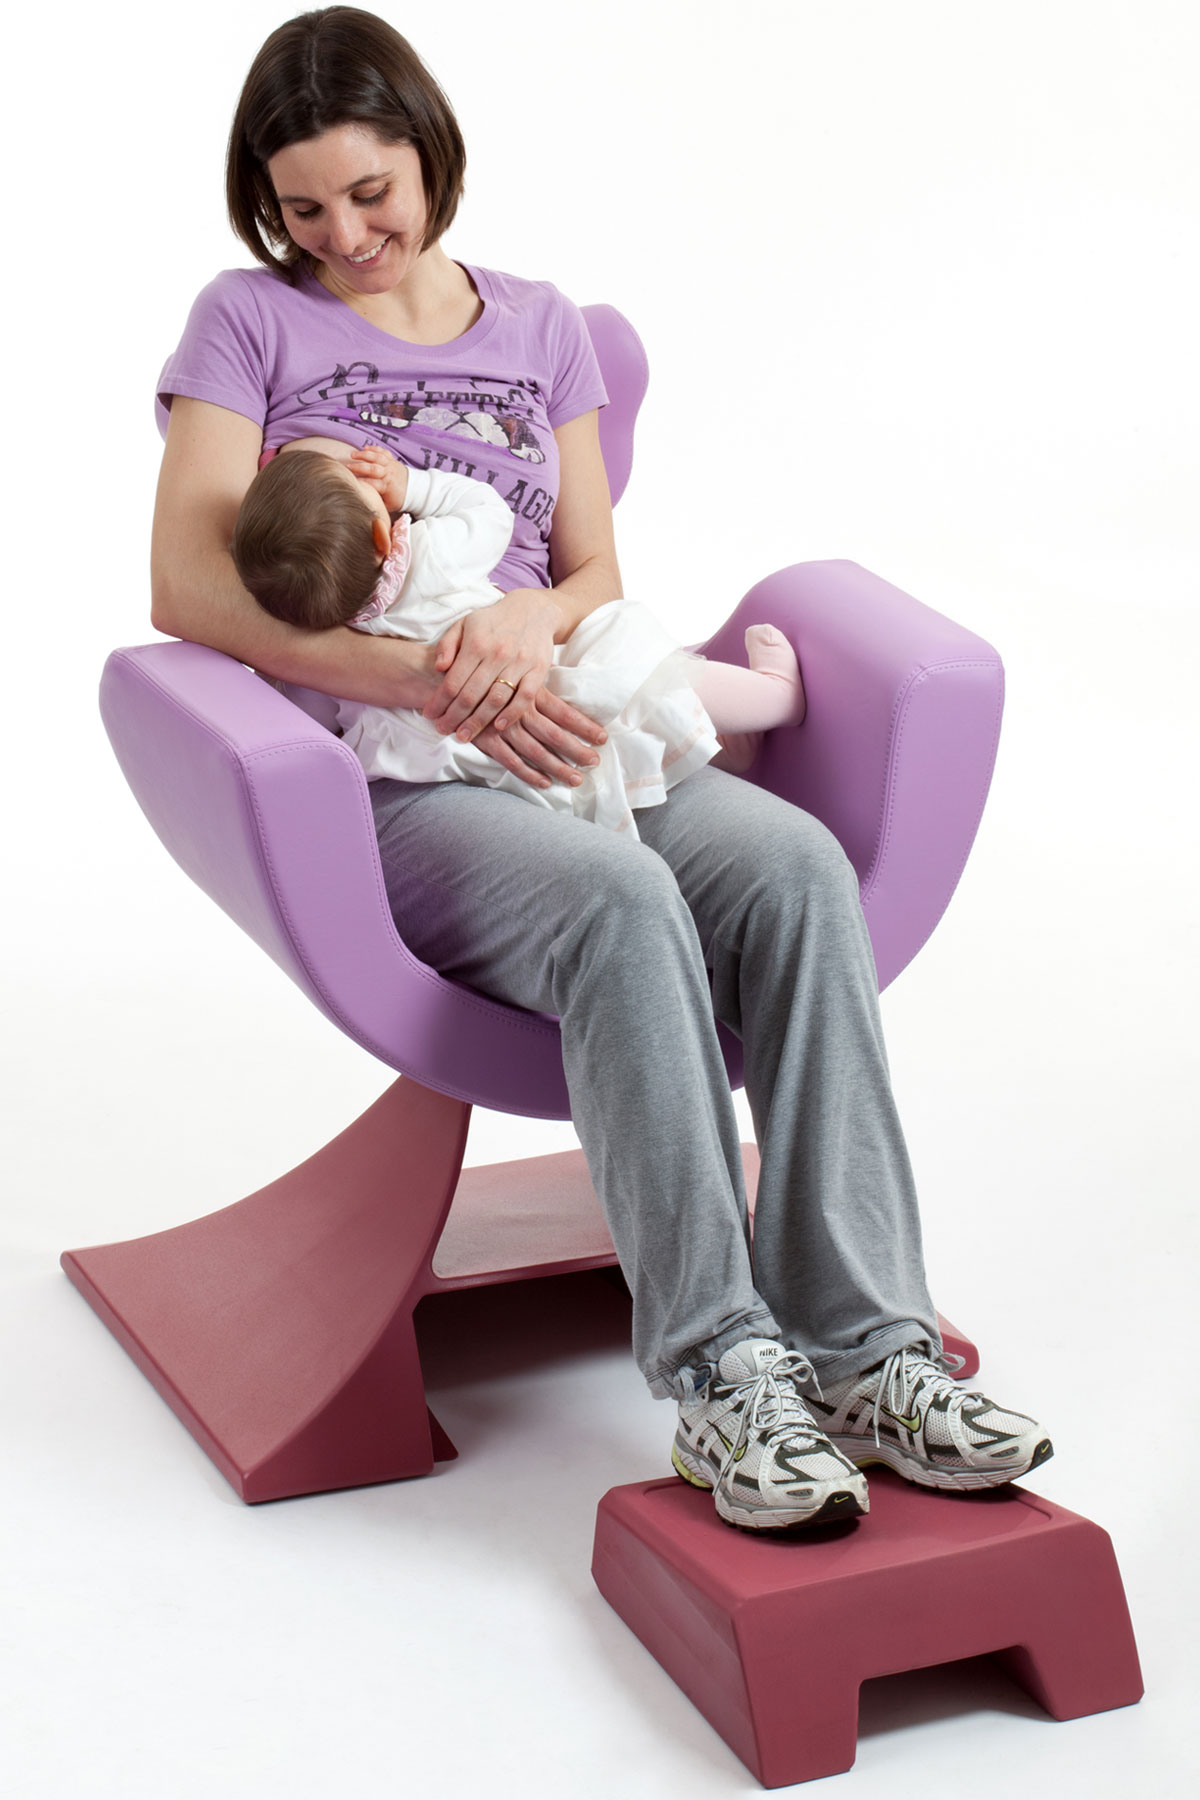 Acquista online comode poltrone per allattamento e sedie per allattamento